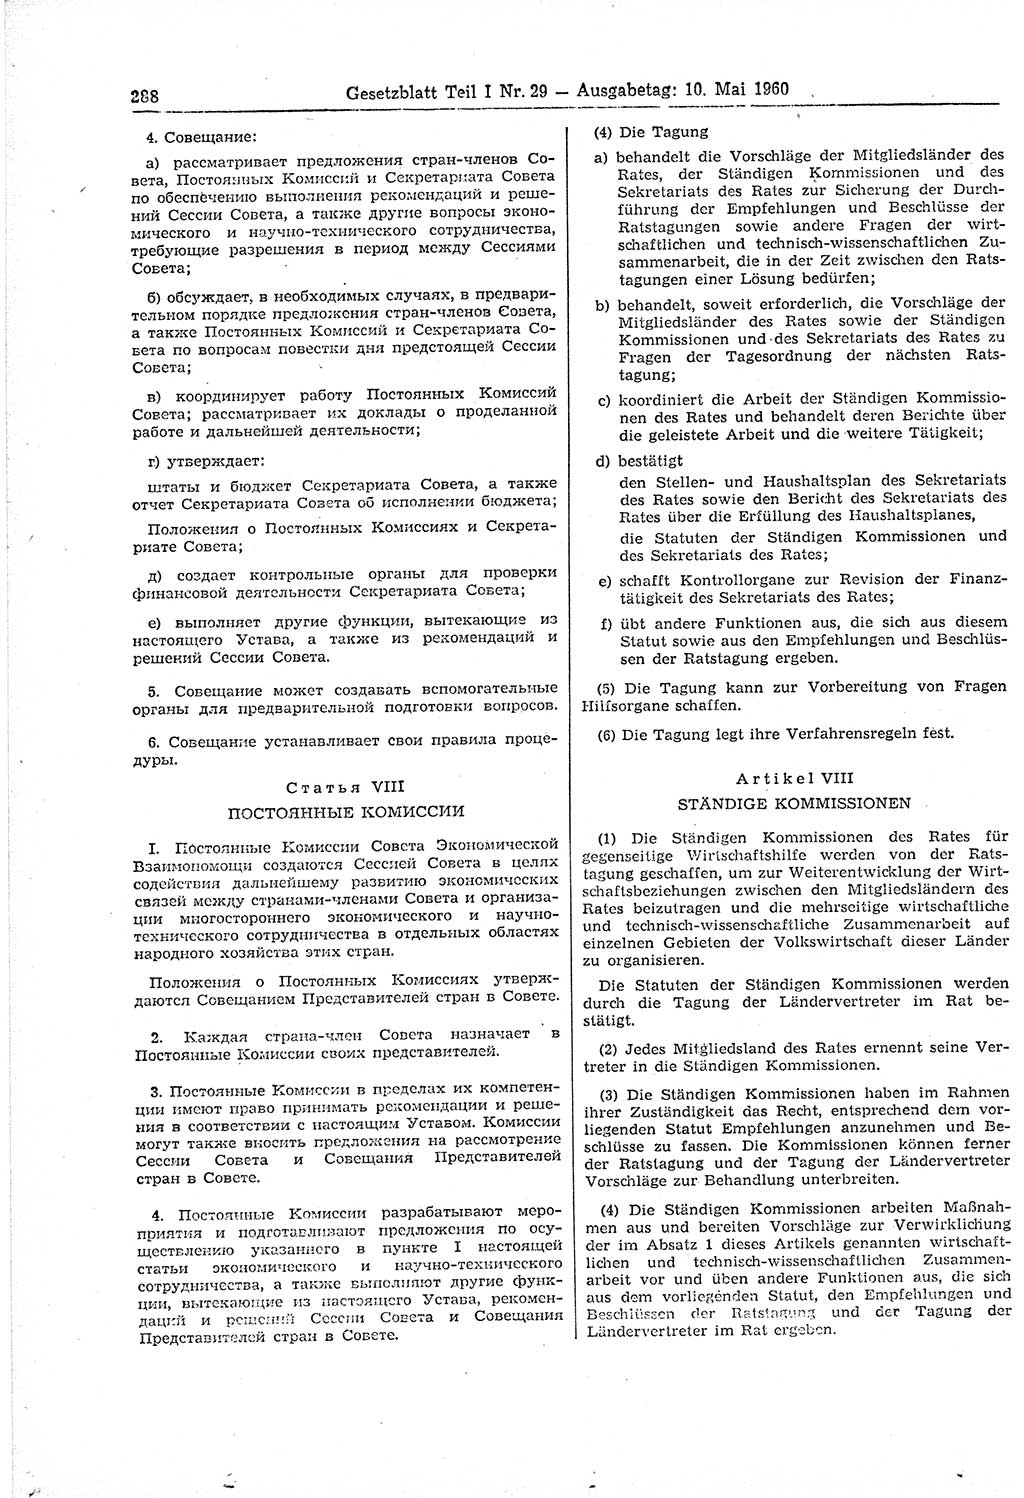 Gesetzblatt (GBl.) der Deutschen Demokratischen Republik (DDR) Teil Ⅰ 1960, Seite 288 (GBl. DDR Ⅰ 1960, S. 288)